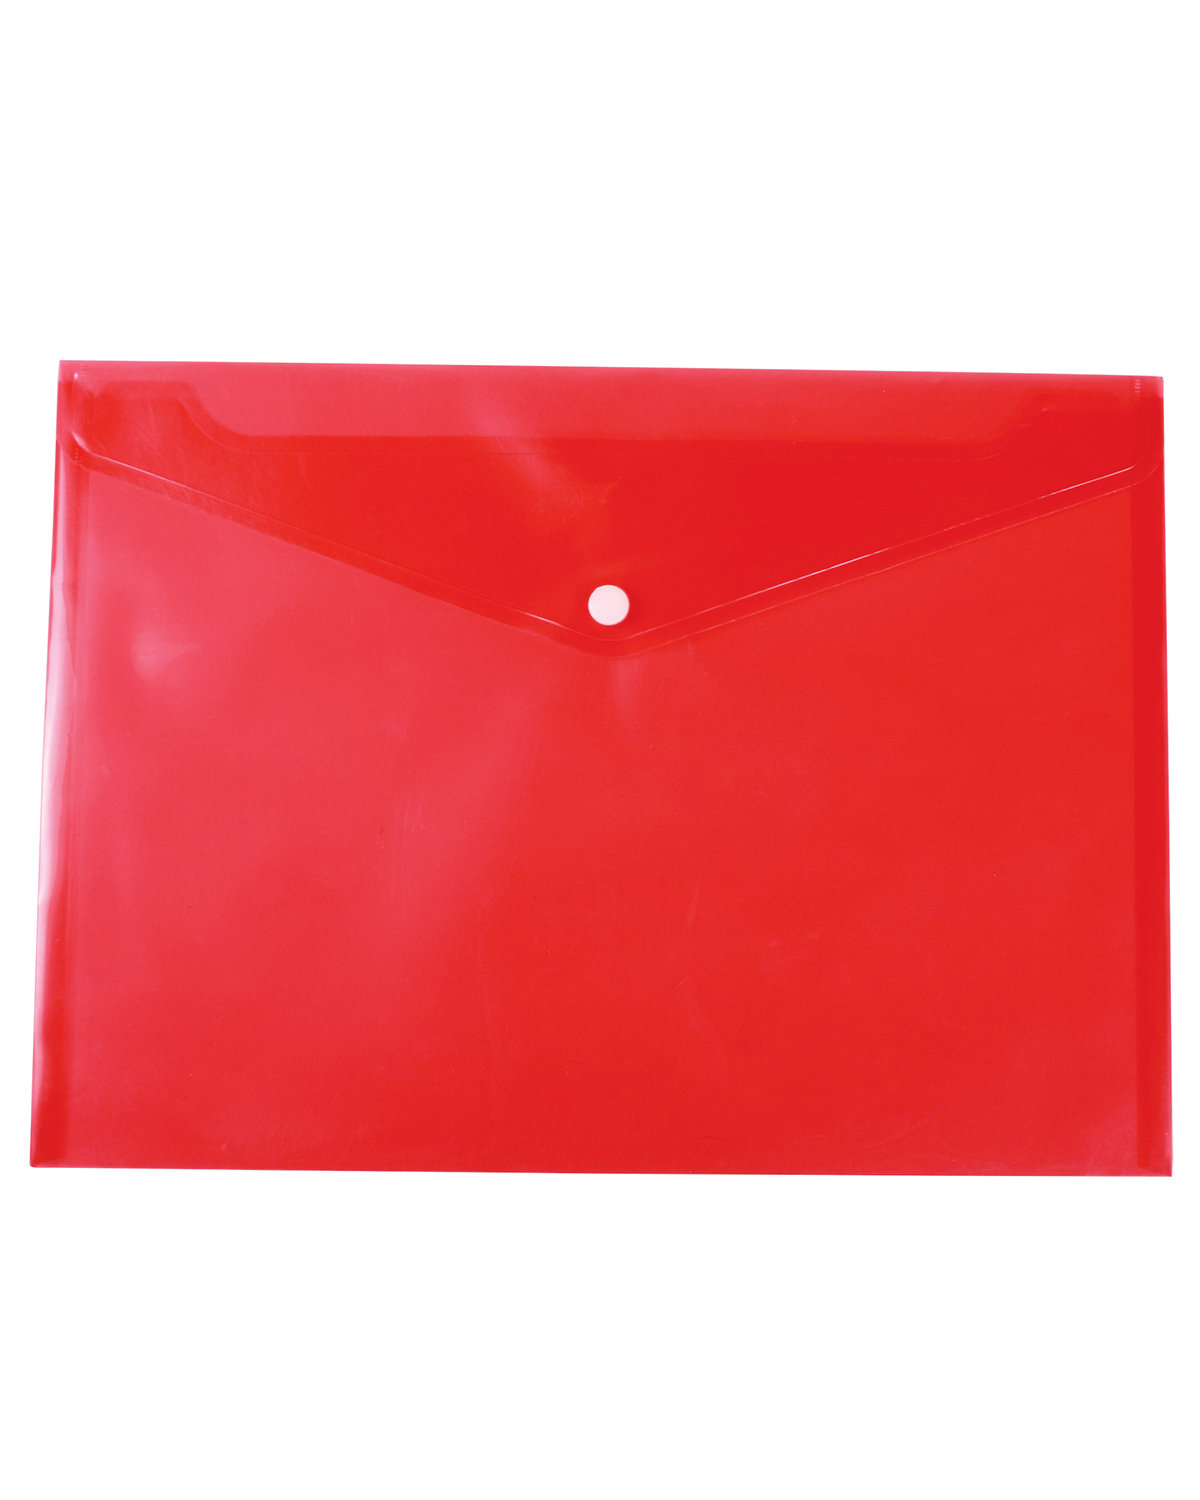 Prime Line Letter-Size Document Envelope translucent red 